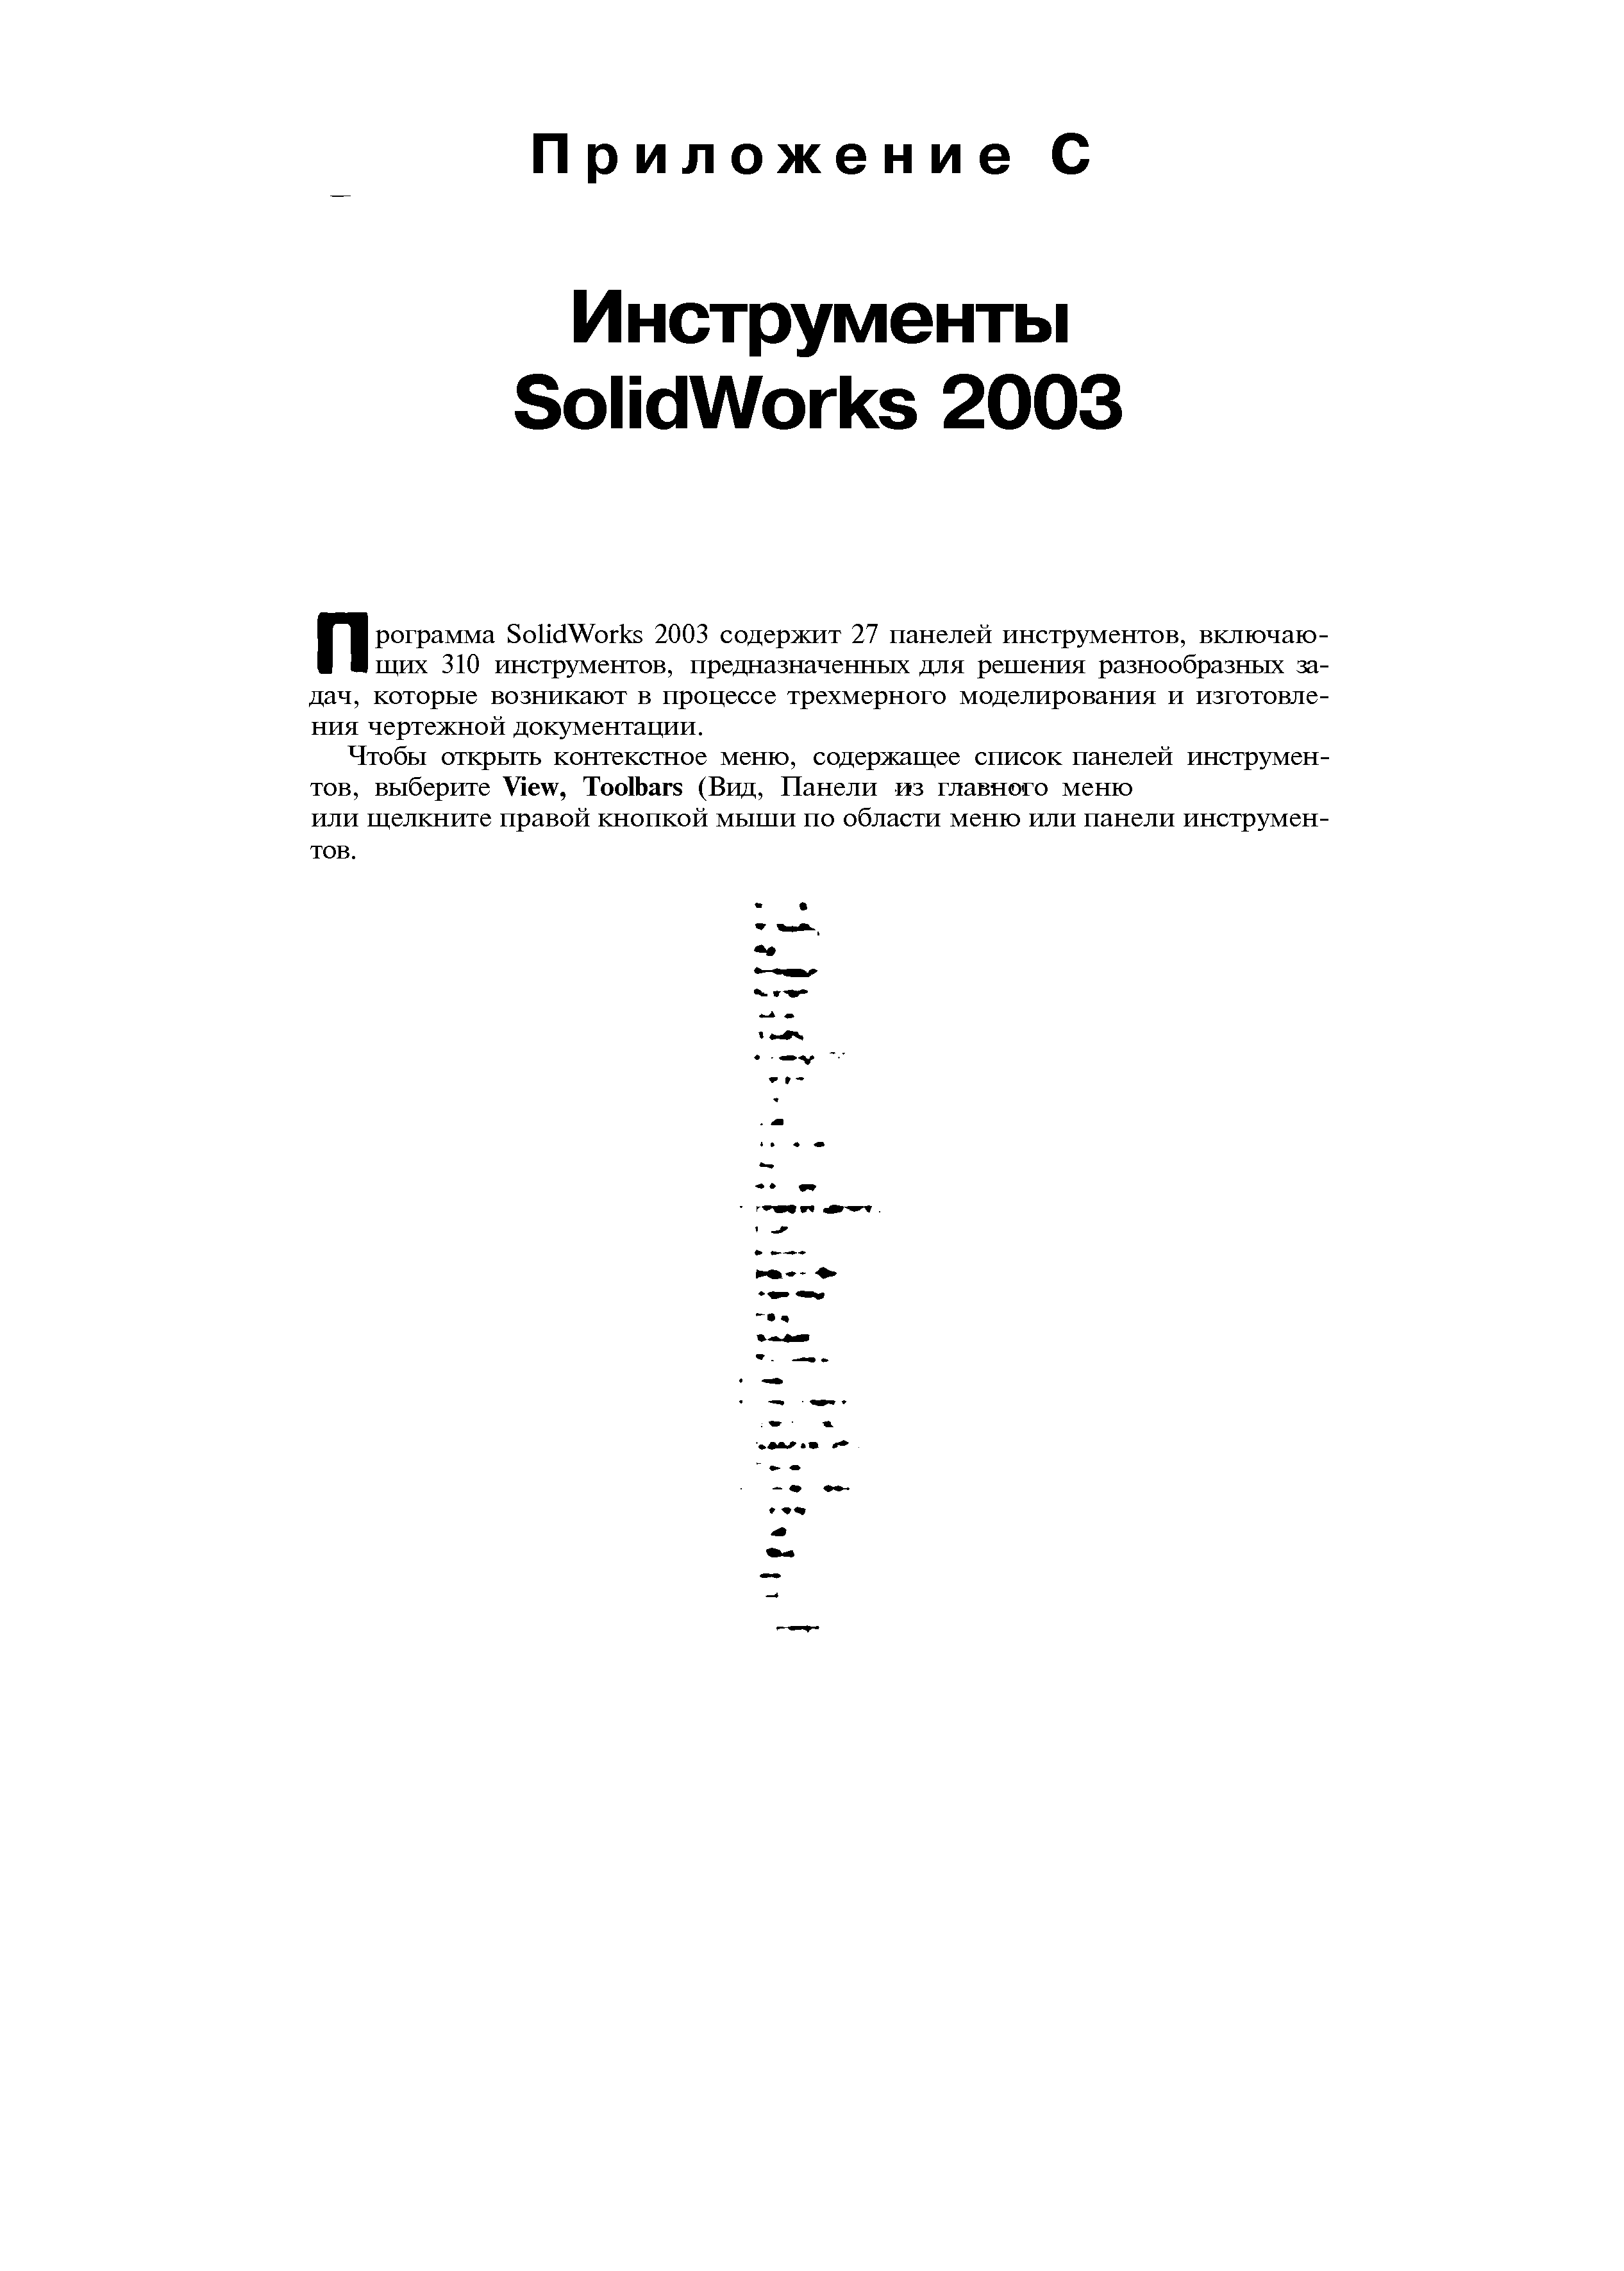 Программа SolidWorks 2003 содержит 27 панелей инструментов, включающих 310 инструментов, предназначенных для решения разнообразных задач, которые возникают в процессе трехмерного моделирования и изготовления чертежной документации.
